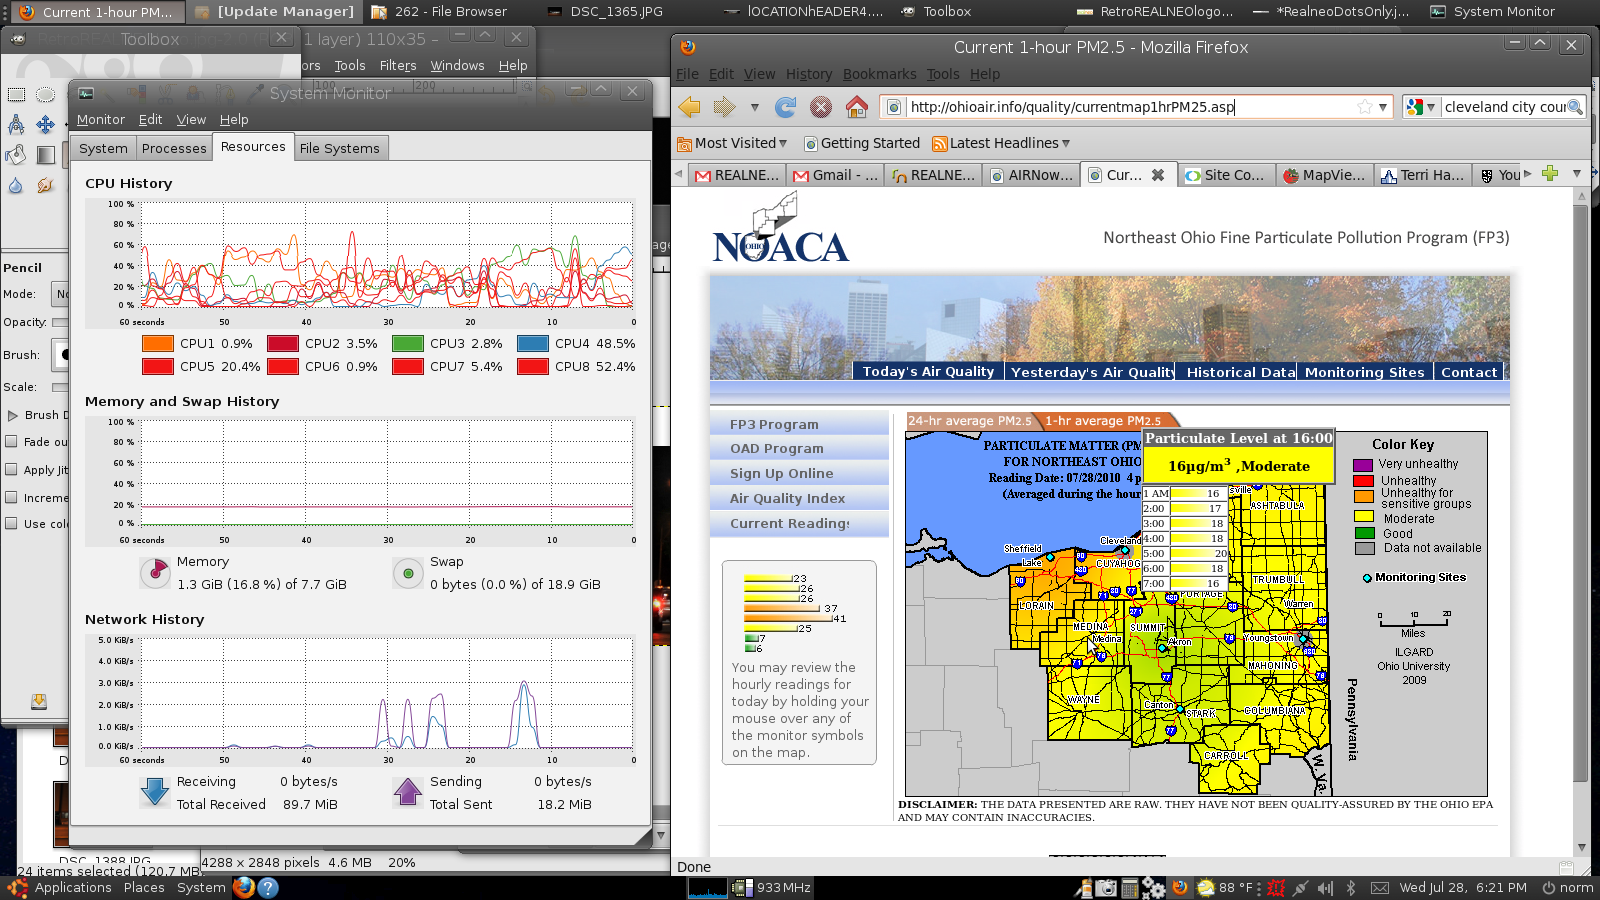 NOACA EPA Air Quality Monitoring for Medina, Ohio - BROKEN